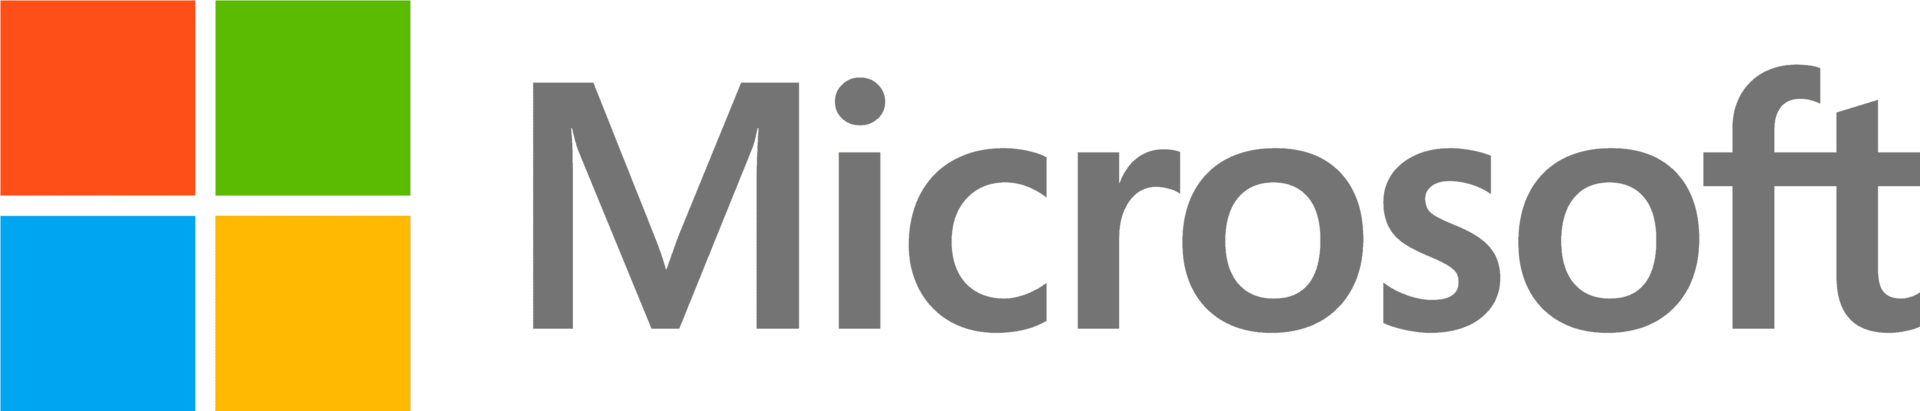 Microsoft DG7GMGF0D5SL.0007 Software-Lizenz/-Upgrade 1 Lizenz(en) (DG7GMGF0D5SL.0007)